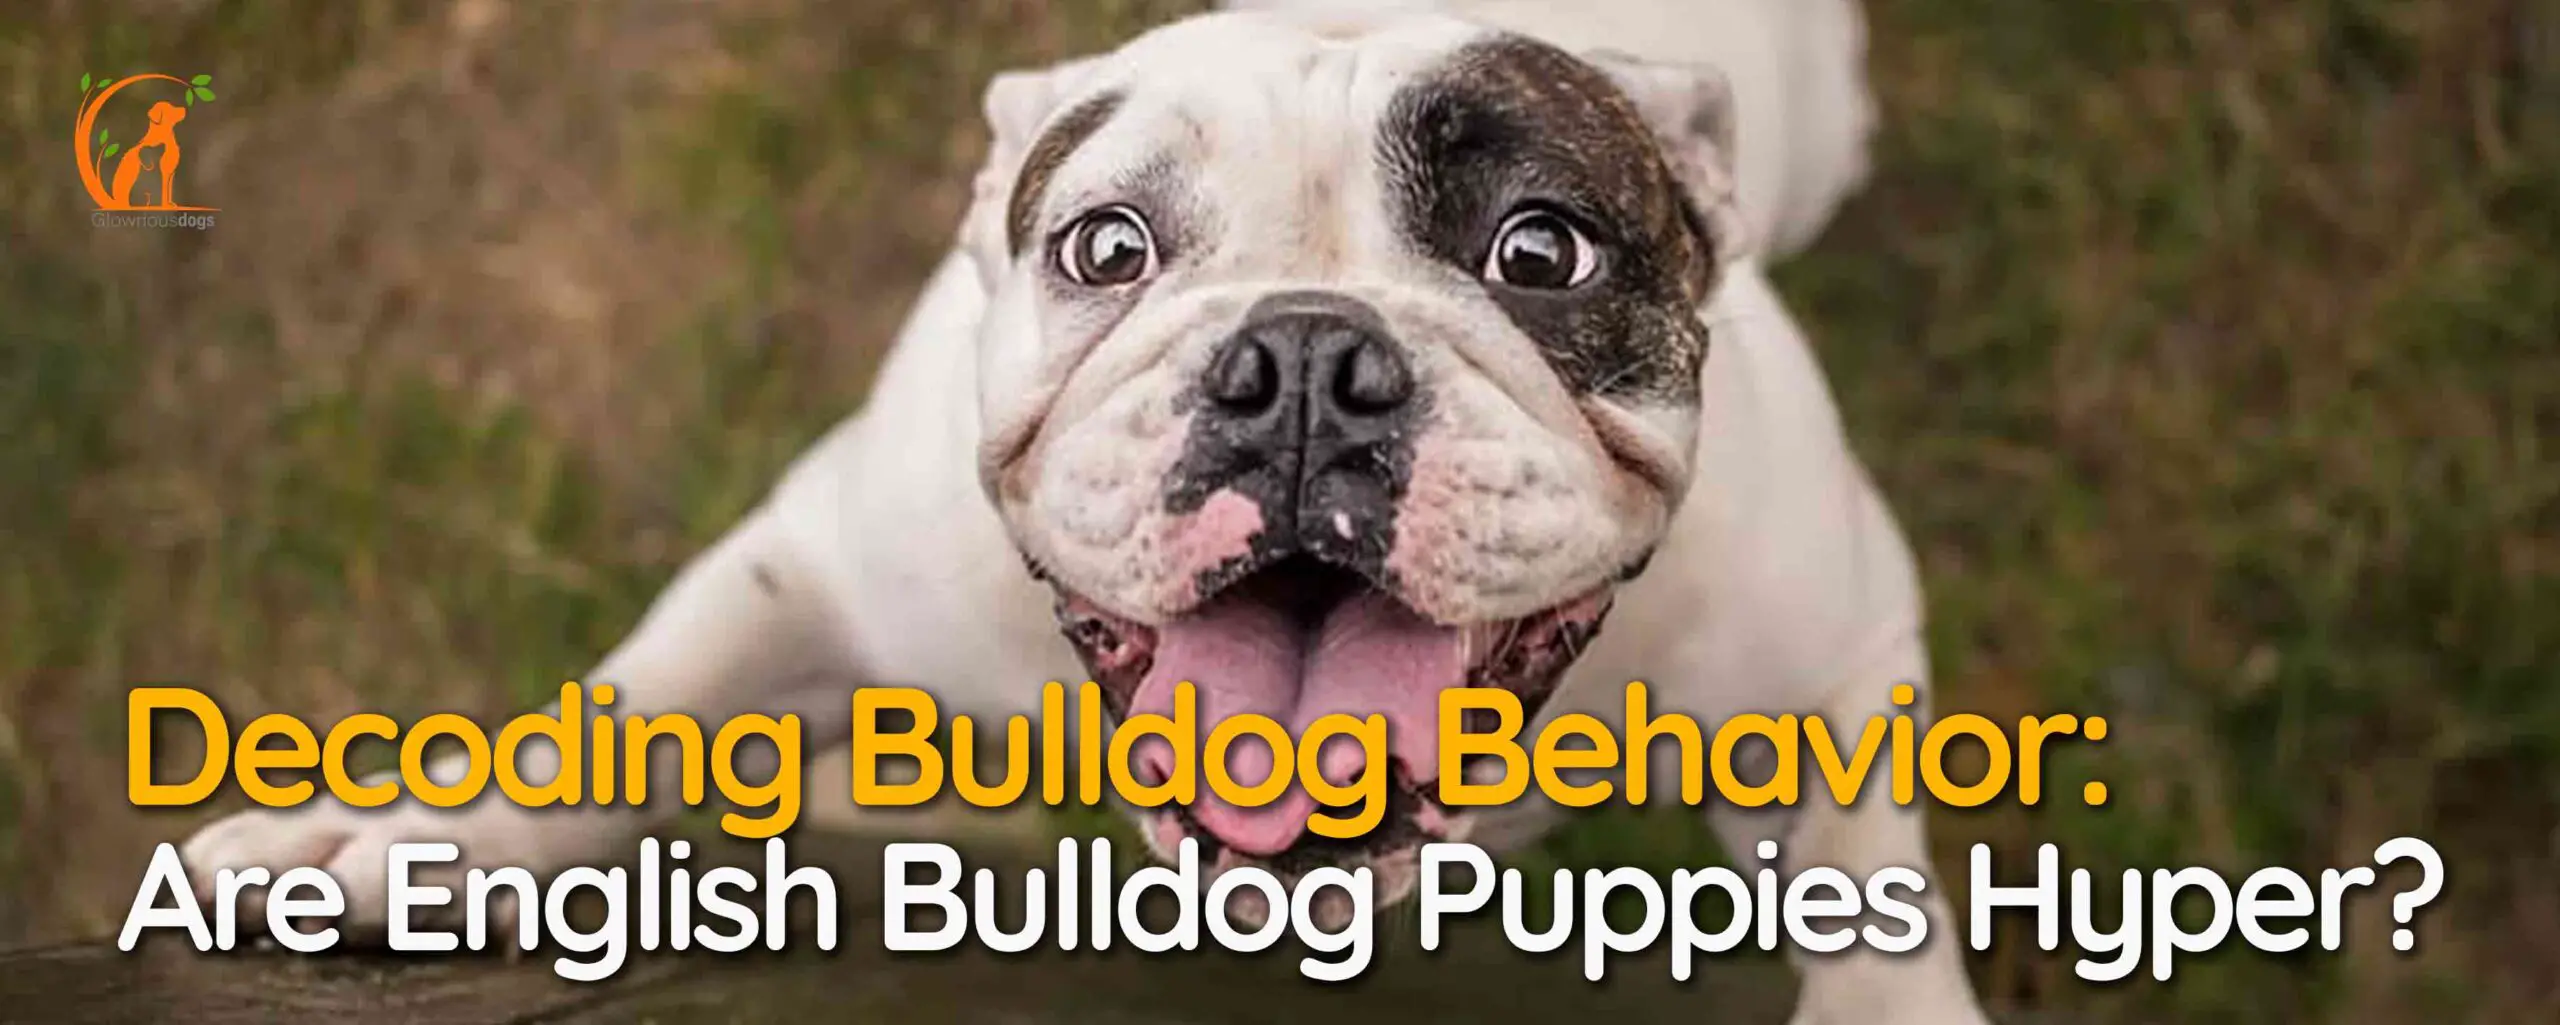 Decoding Bulldog Behavior: Are English Bulldog Puppies Hyper?